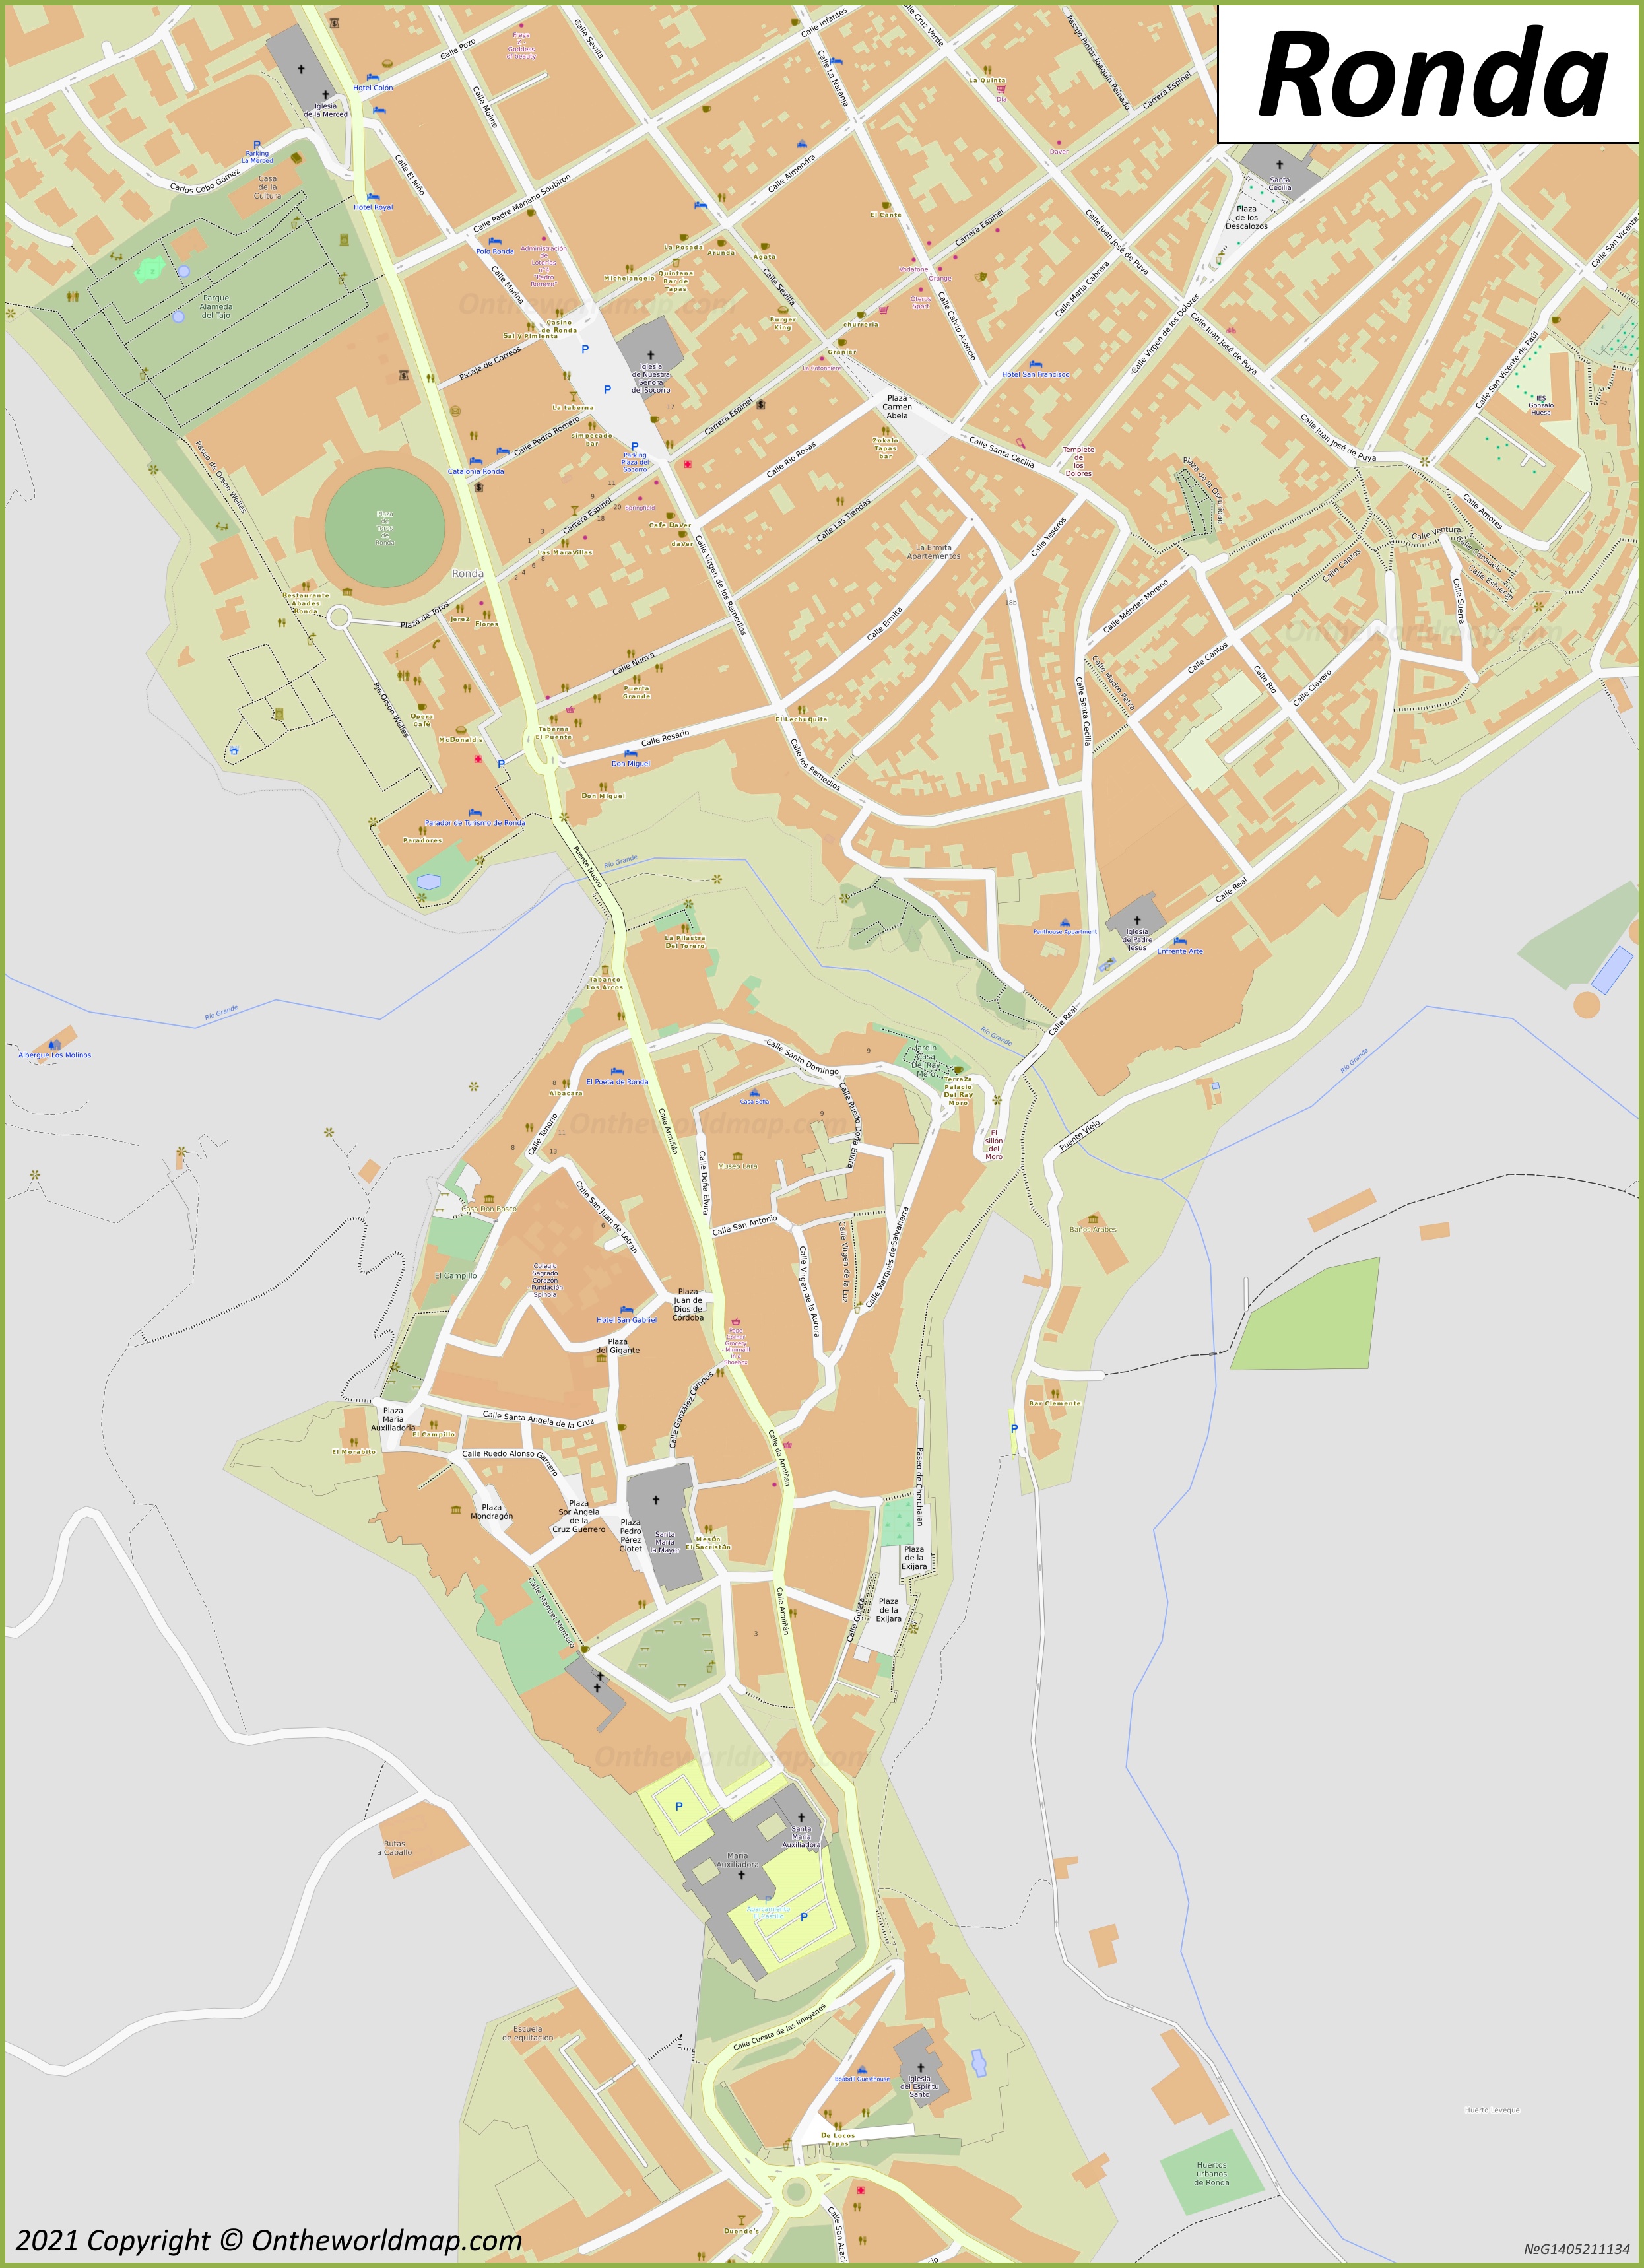 Mapa de la ciudad alta de Cuenca